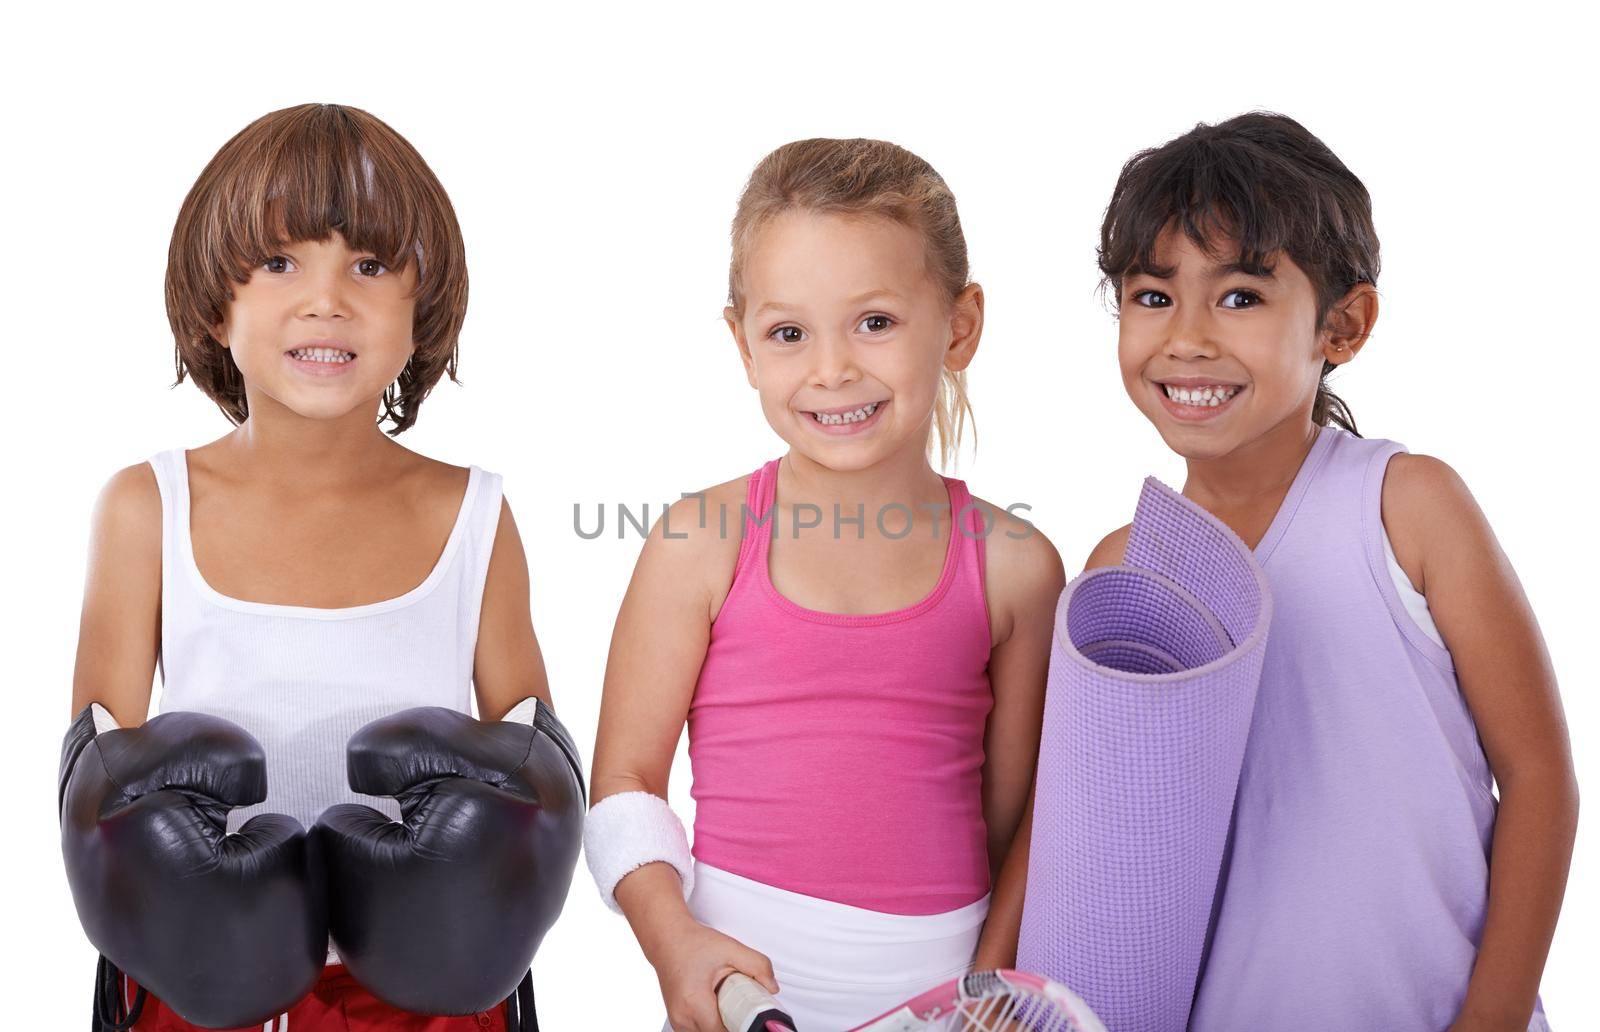 When I grow up I want to be a...Studio shot of a group of children in various sports attire